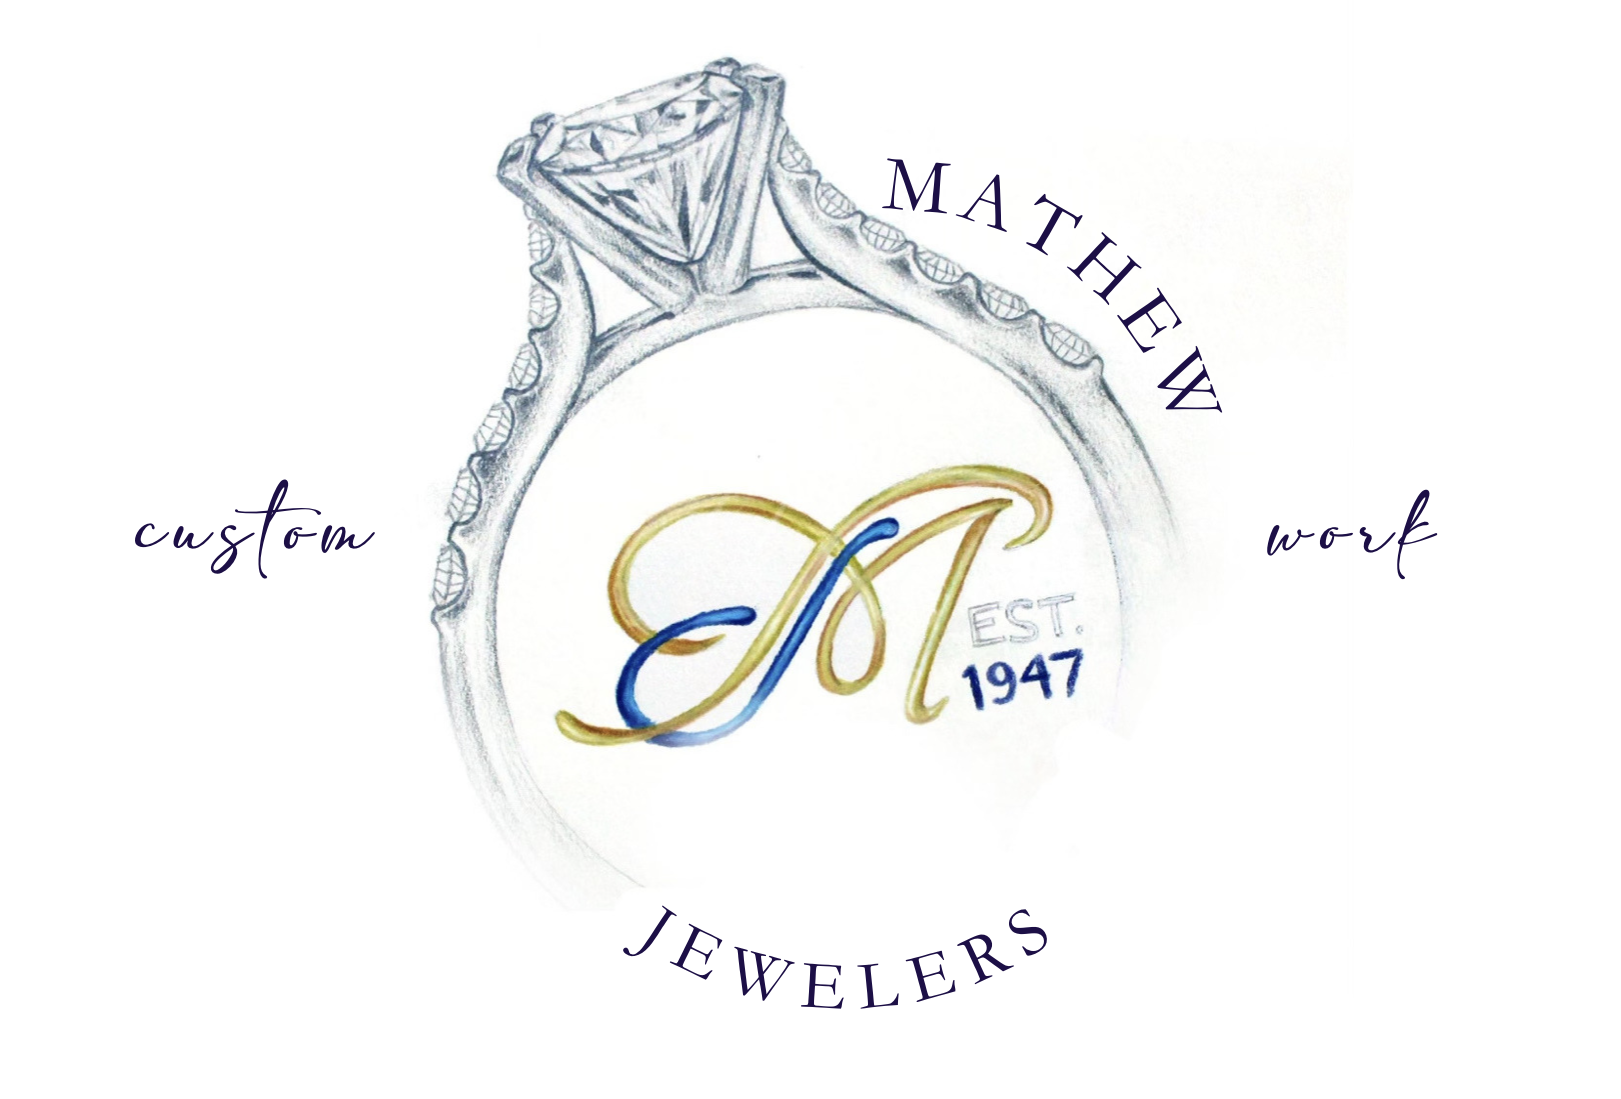 Mathew Jewelers, Inc. Zelienople, PA